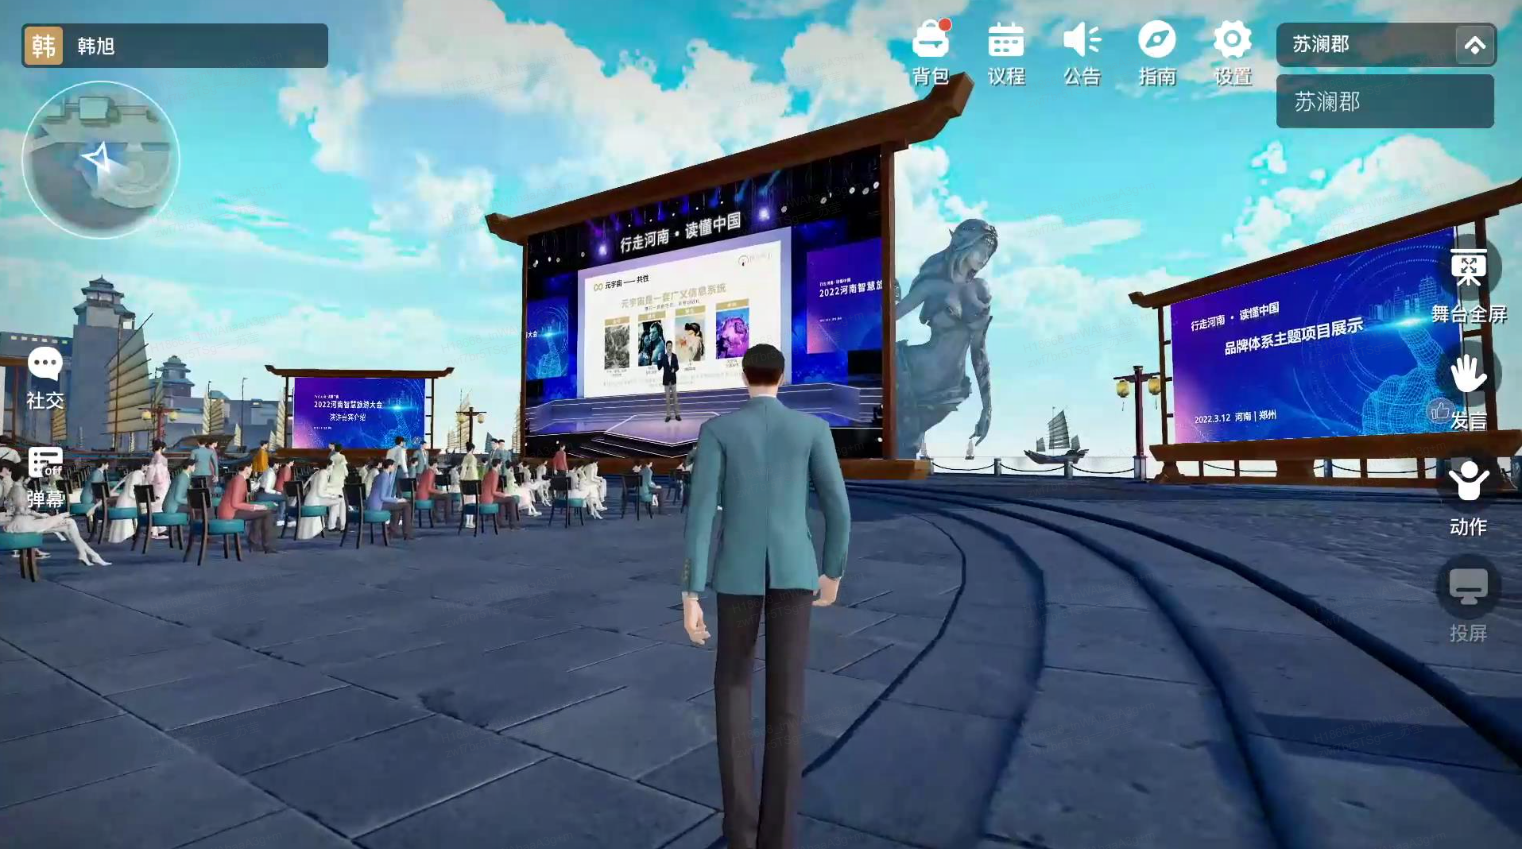 图片展示了一个三维模拟环境，中间有个虚拟角色背对观众，前方是一个大屏幕和观众席。